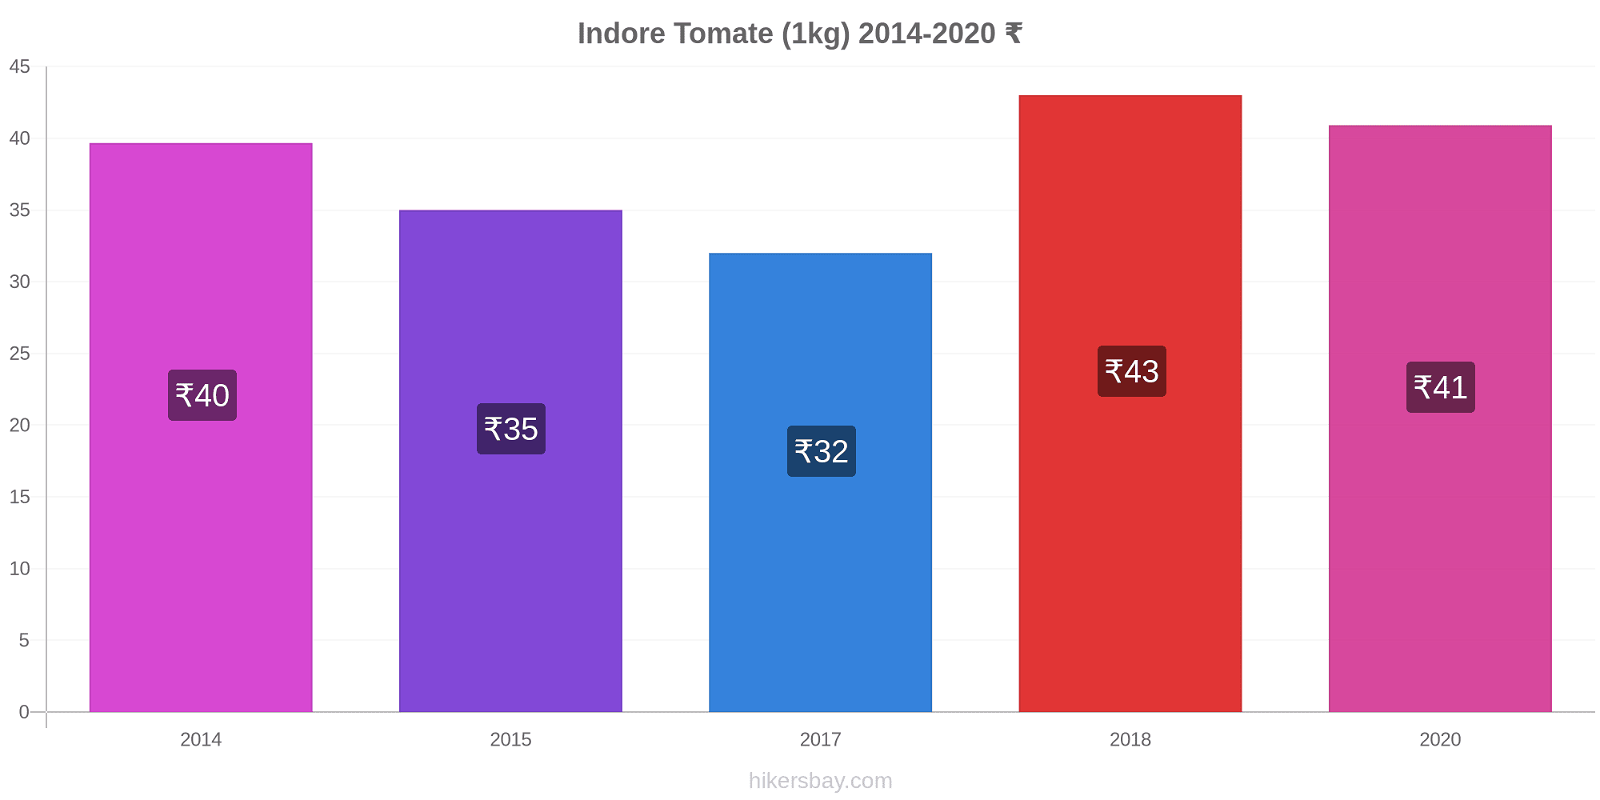 Indore cambios de precios Tomate (1kg) hikersbay.com